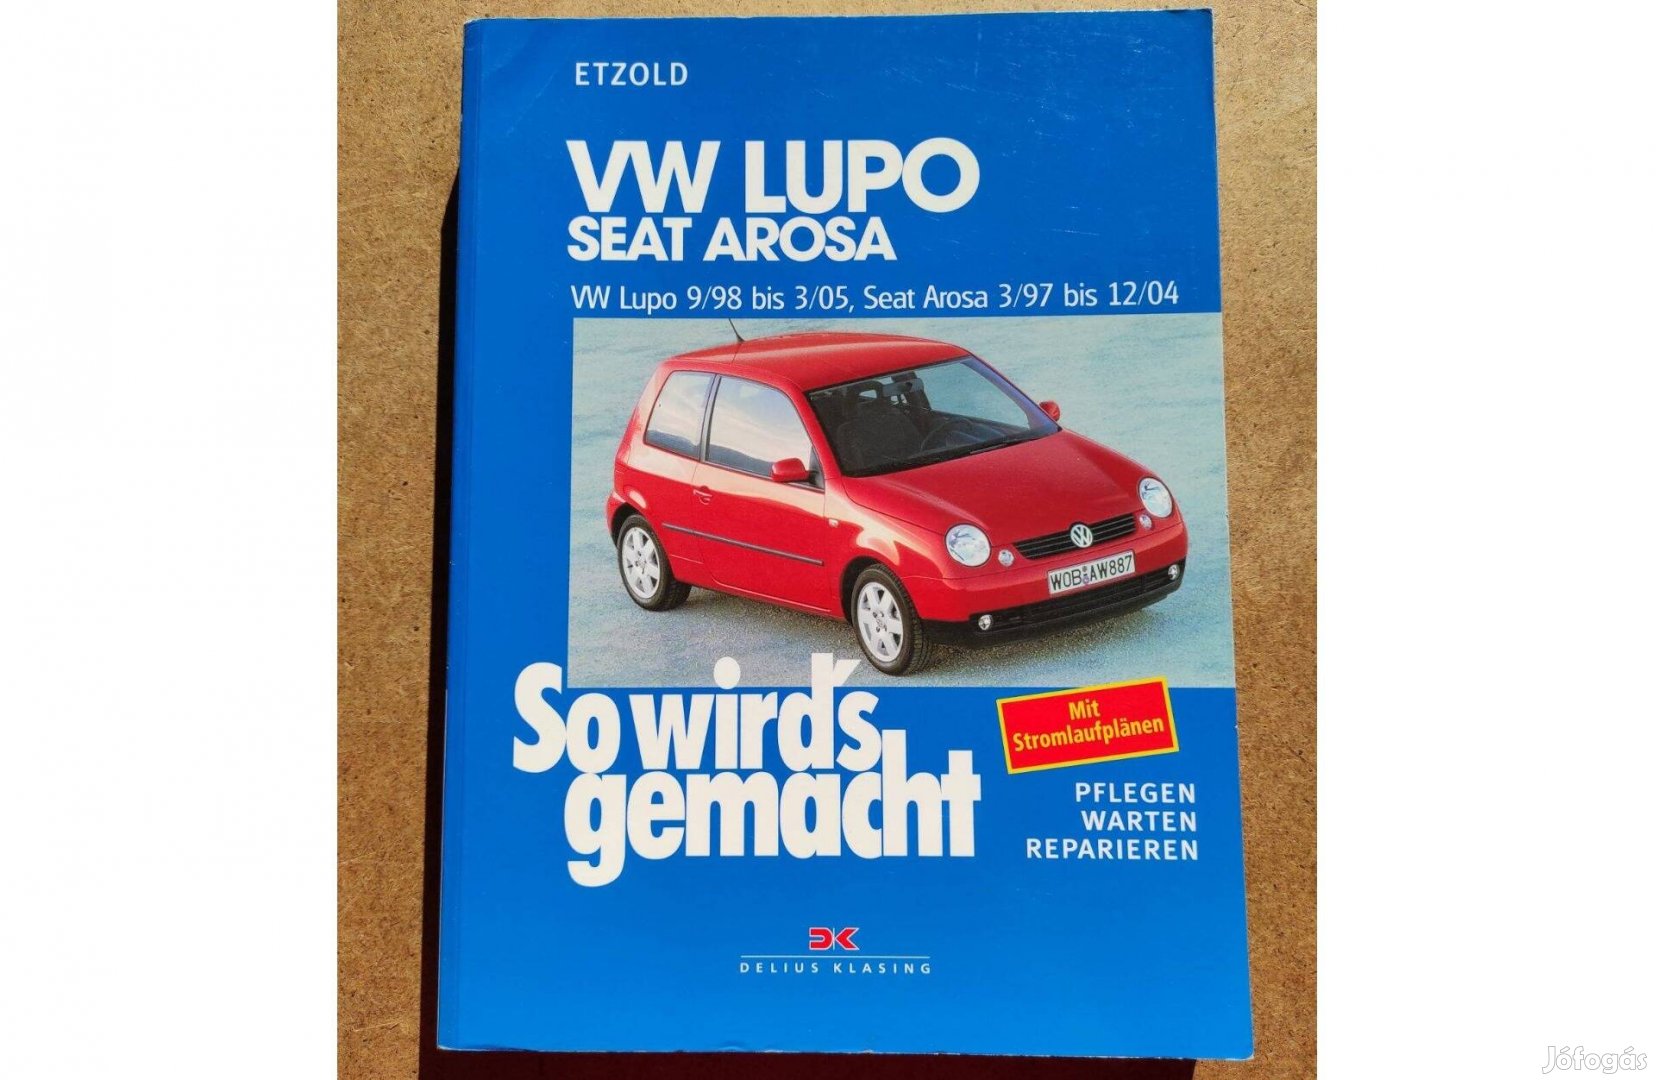 Volkswagen Vw. Lupo. Seat Arosa javítási karbantartási könyv